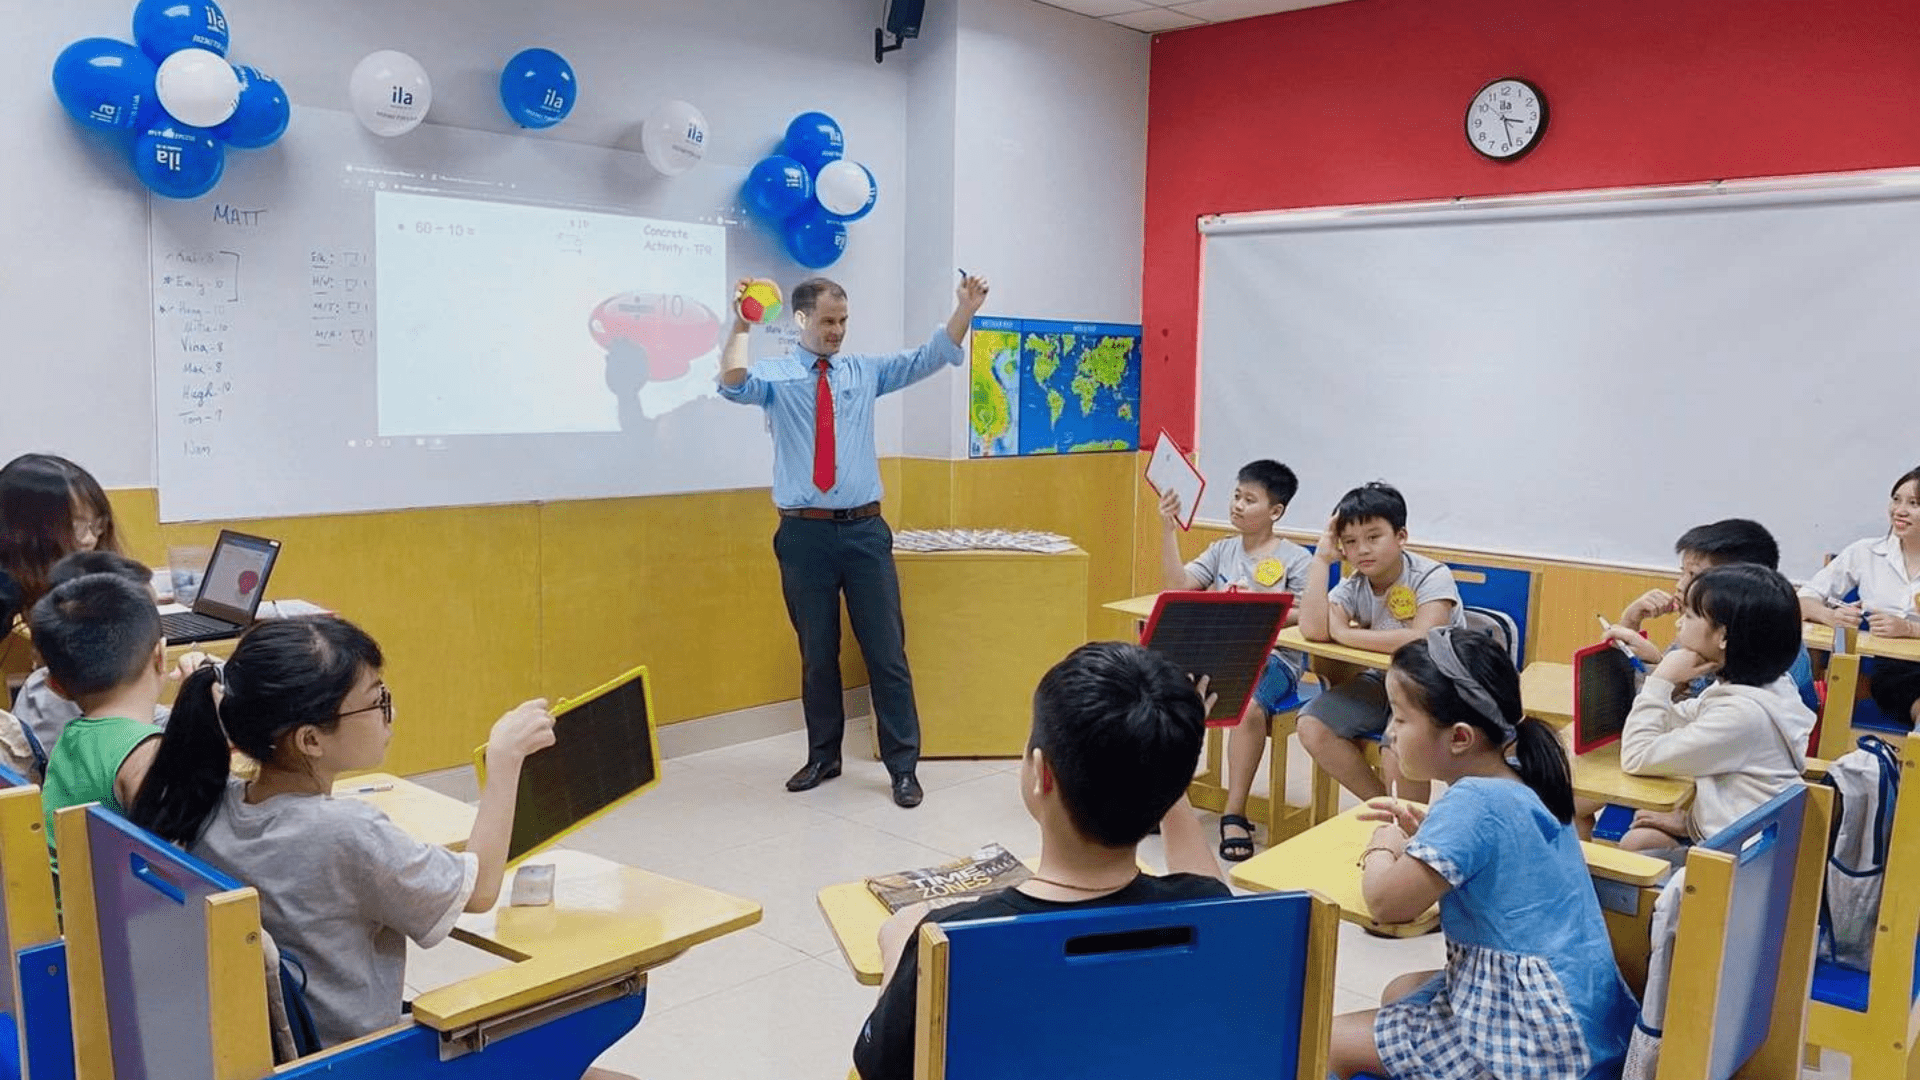 Trung Tâm AMES – Địa điểm học tiếng anh giao tiếp Đà Nẵng đáng tin cậy